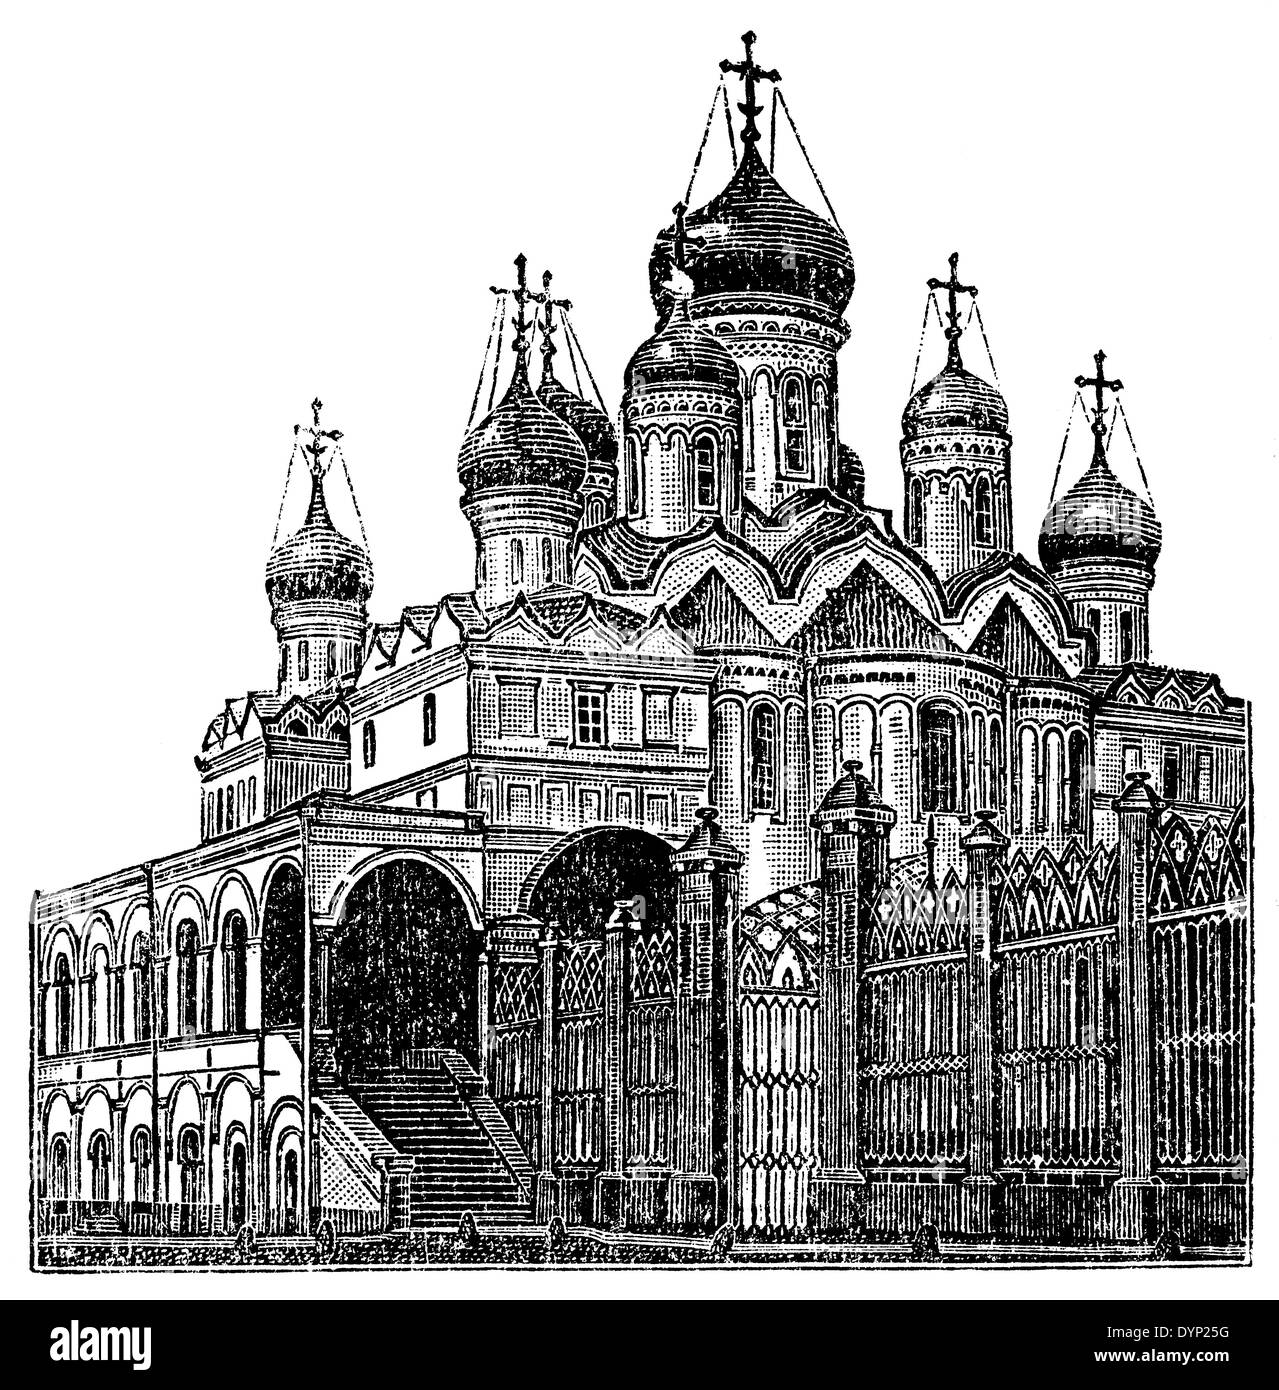 Annunciazione Cattedrale del Cremlino di Mosca (1490), Mosca, Russia, illustrazione da enciclopedia sovietica, 1927 Foto Stock